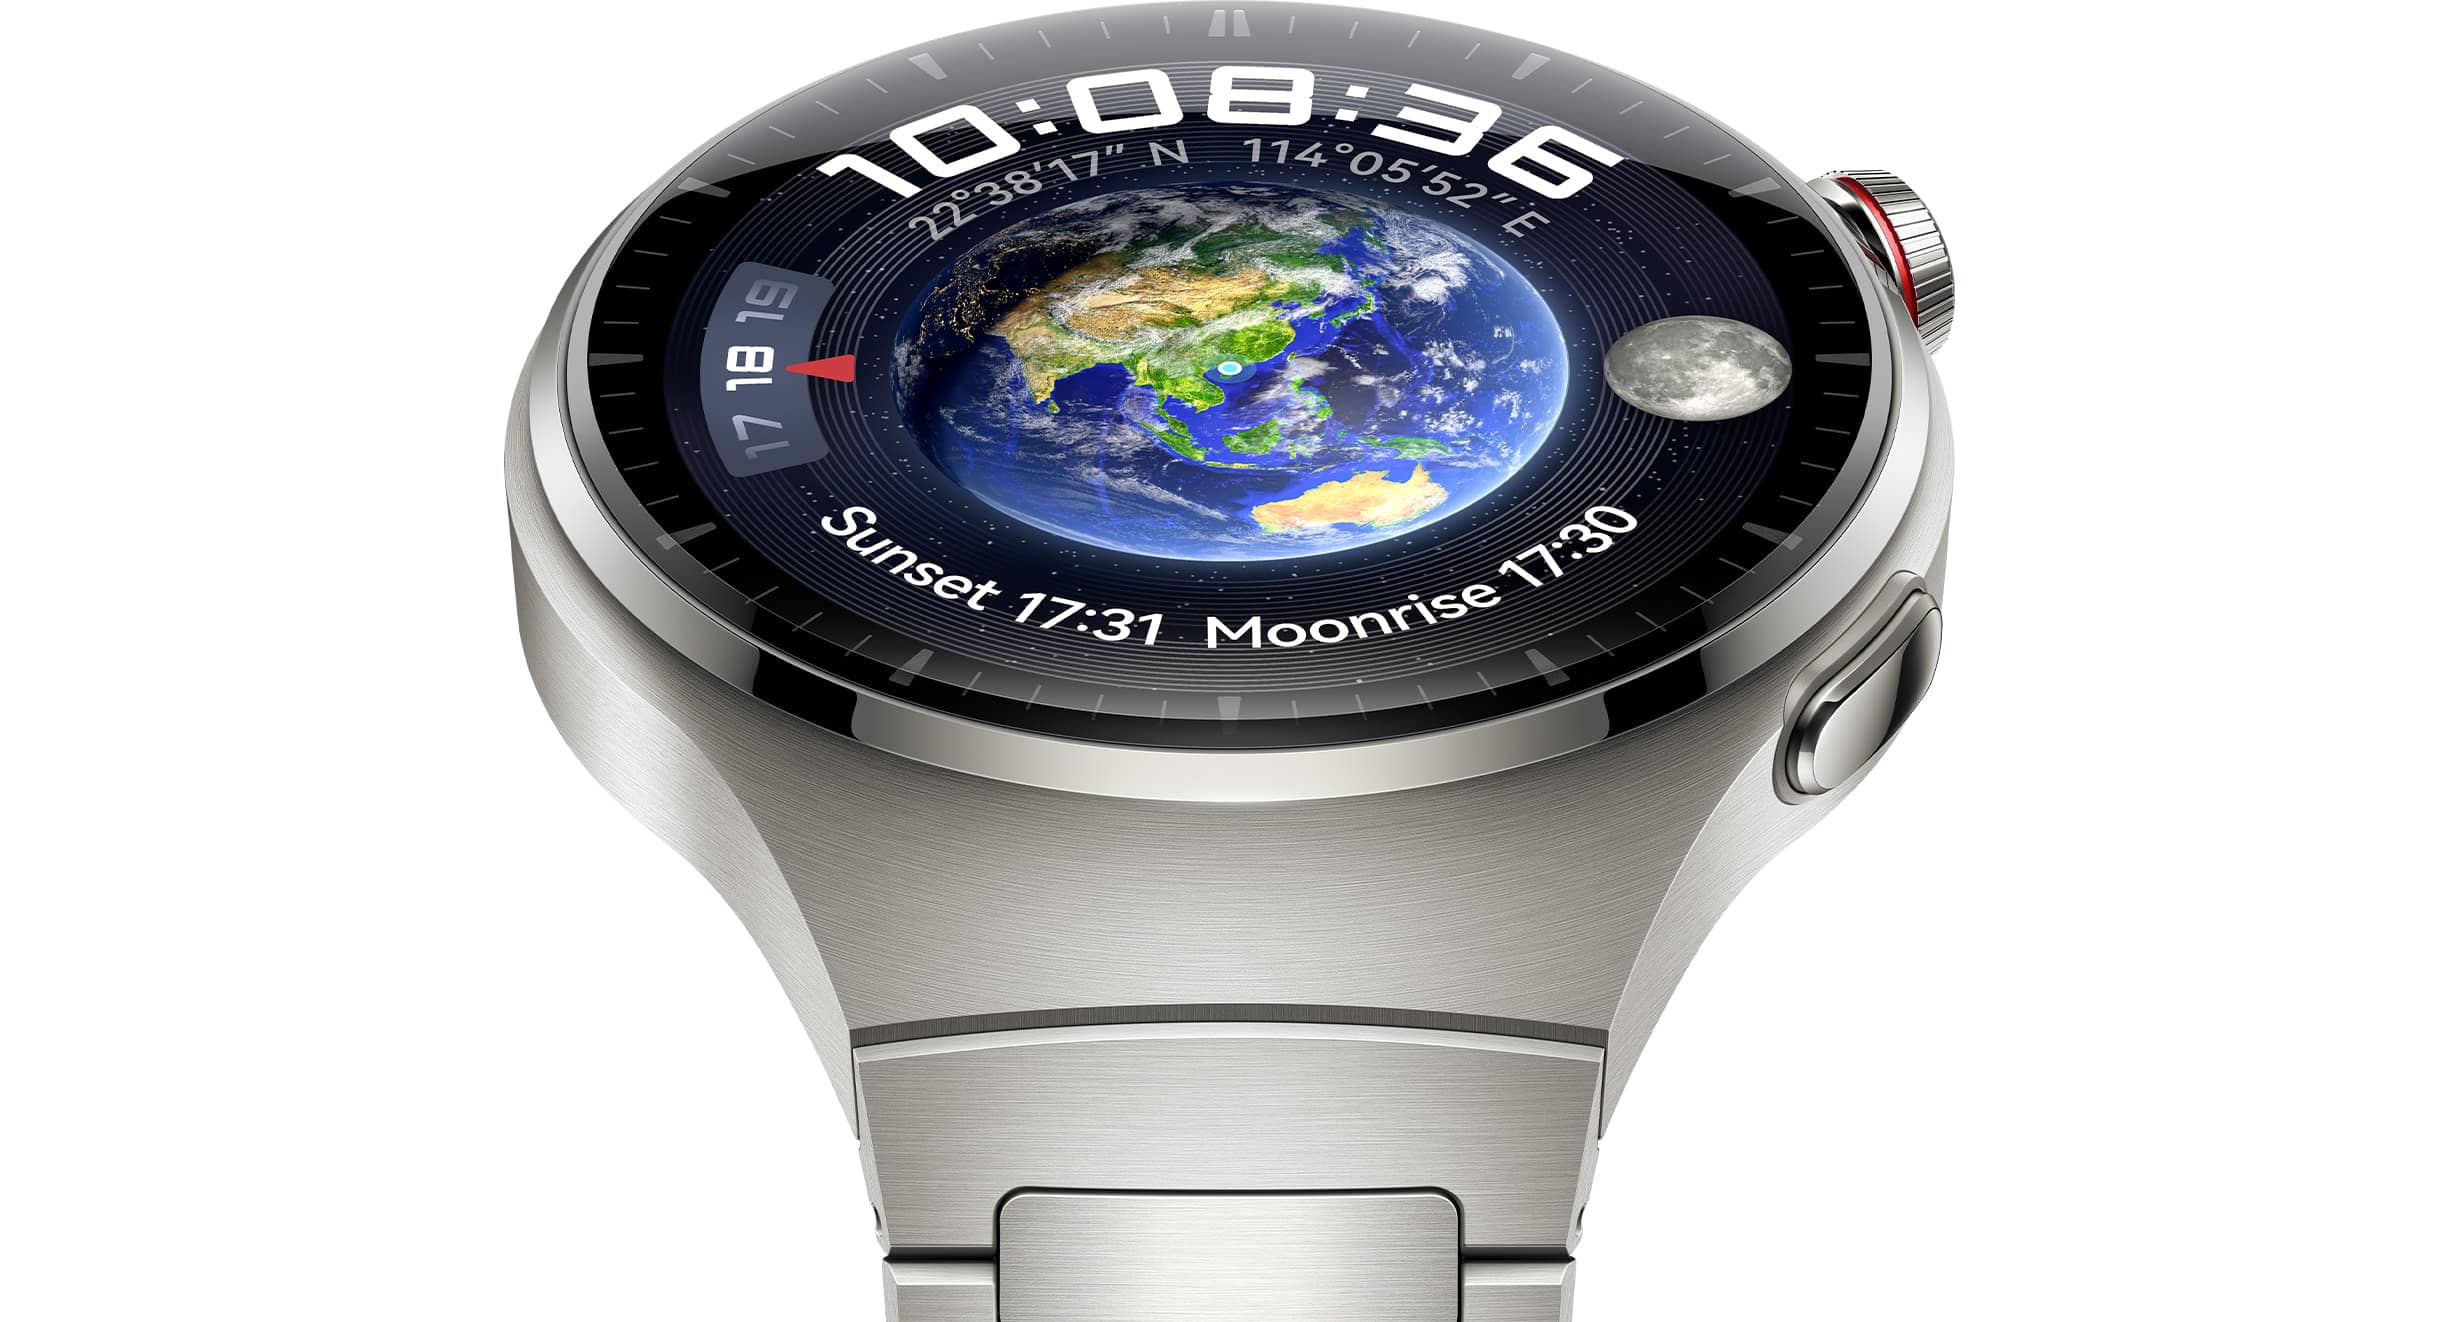 Reloj Inteligente Gt4pro Para Mujer Y Hombre Para Huawei